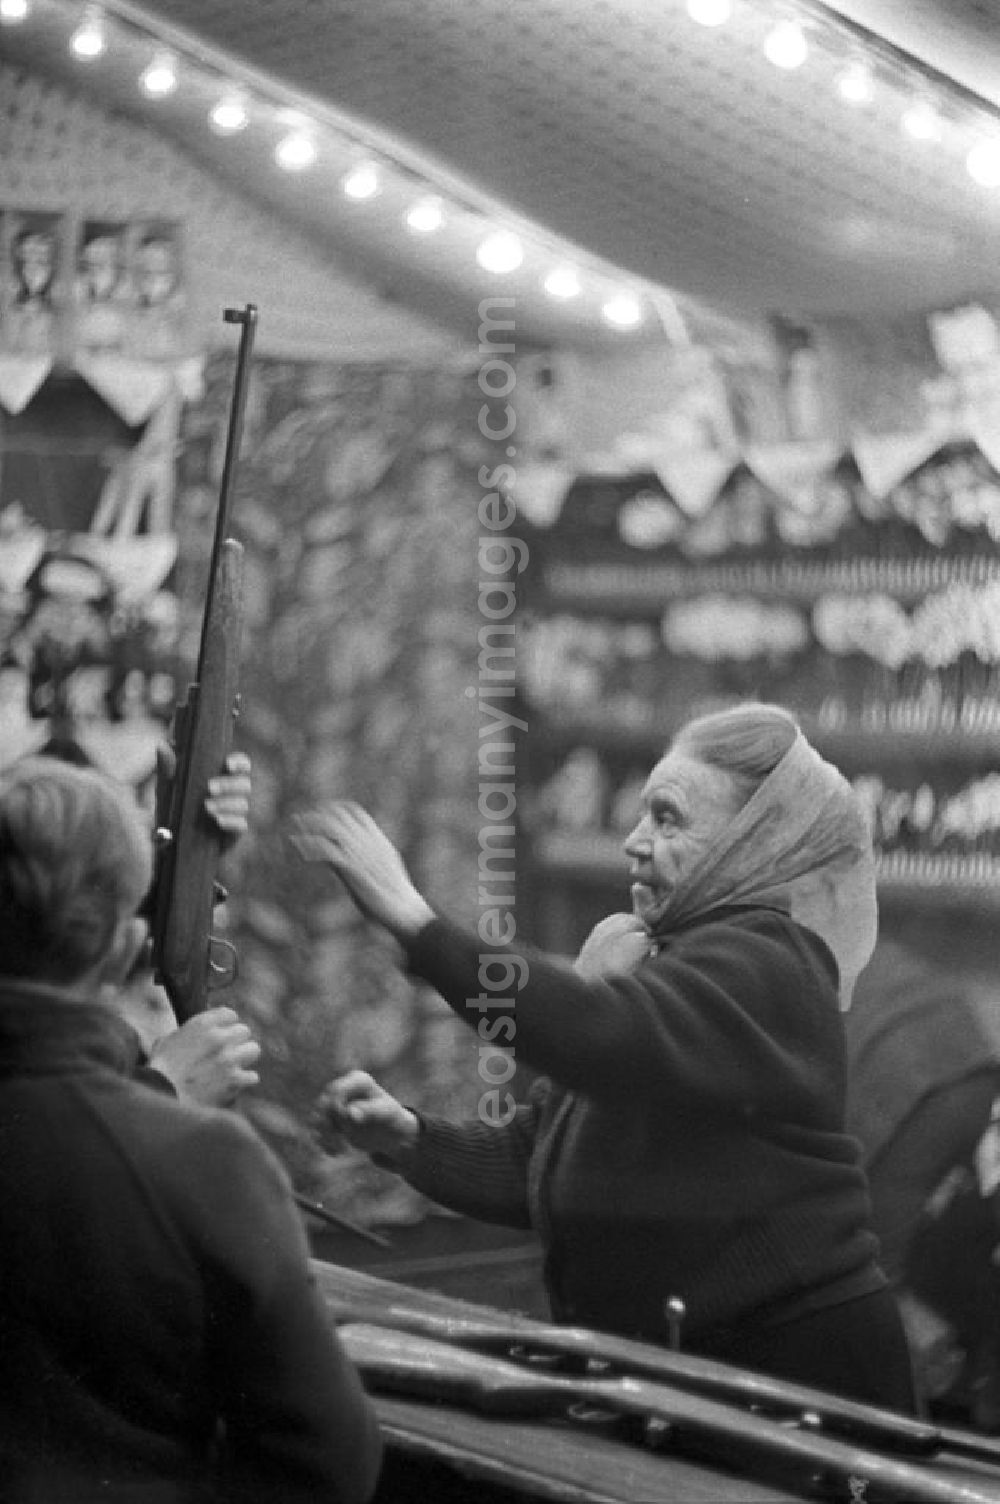 Leipzig: Eine Schaustellerin des Schießstandes auf dem Leipziger Weihnachtsmarkt hilft den Kunden beim Laden des Gewehres.